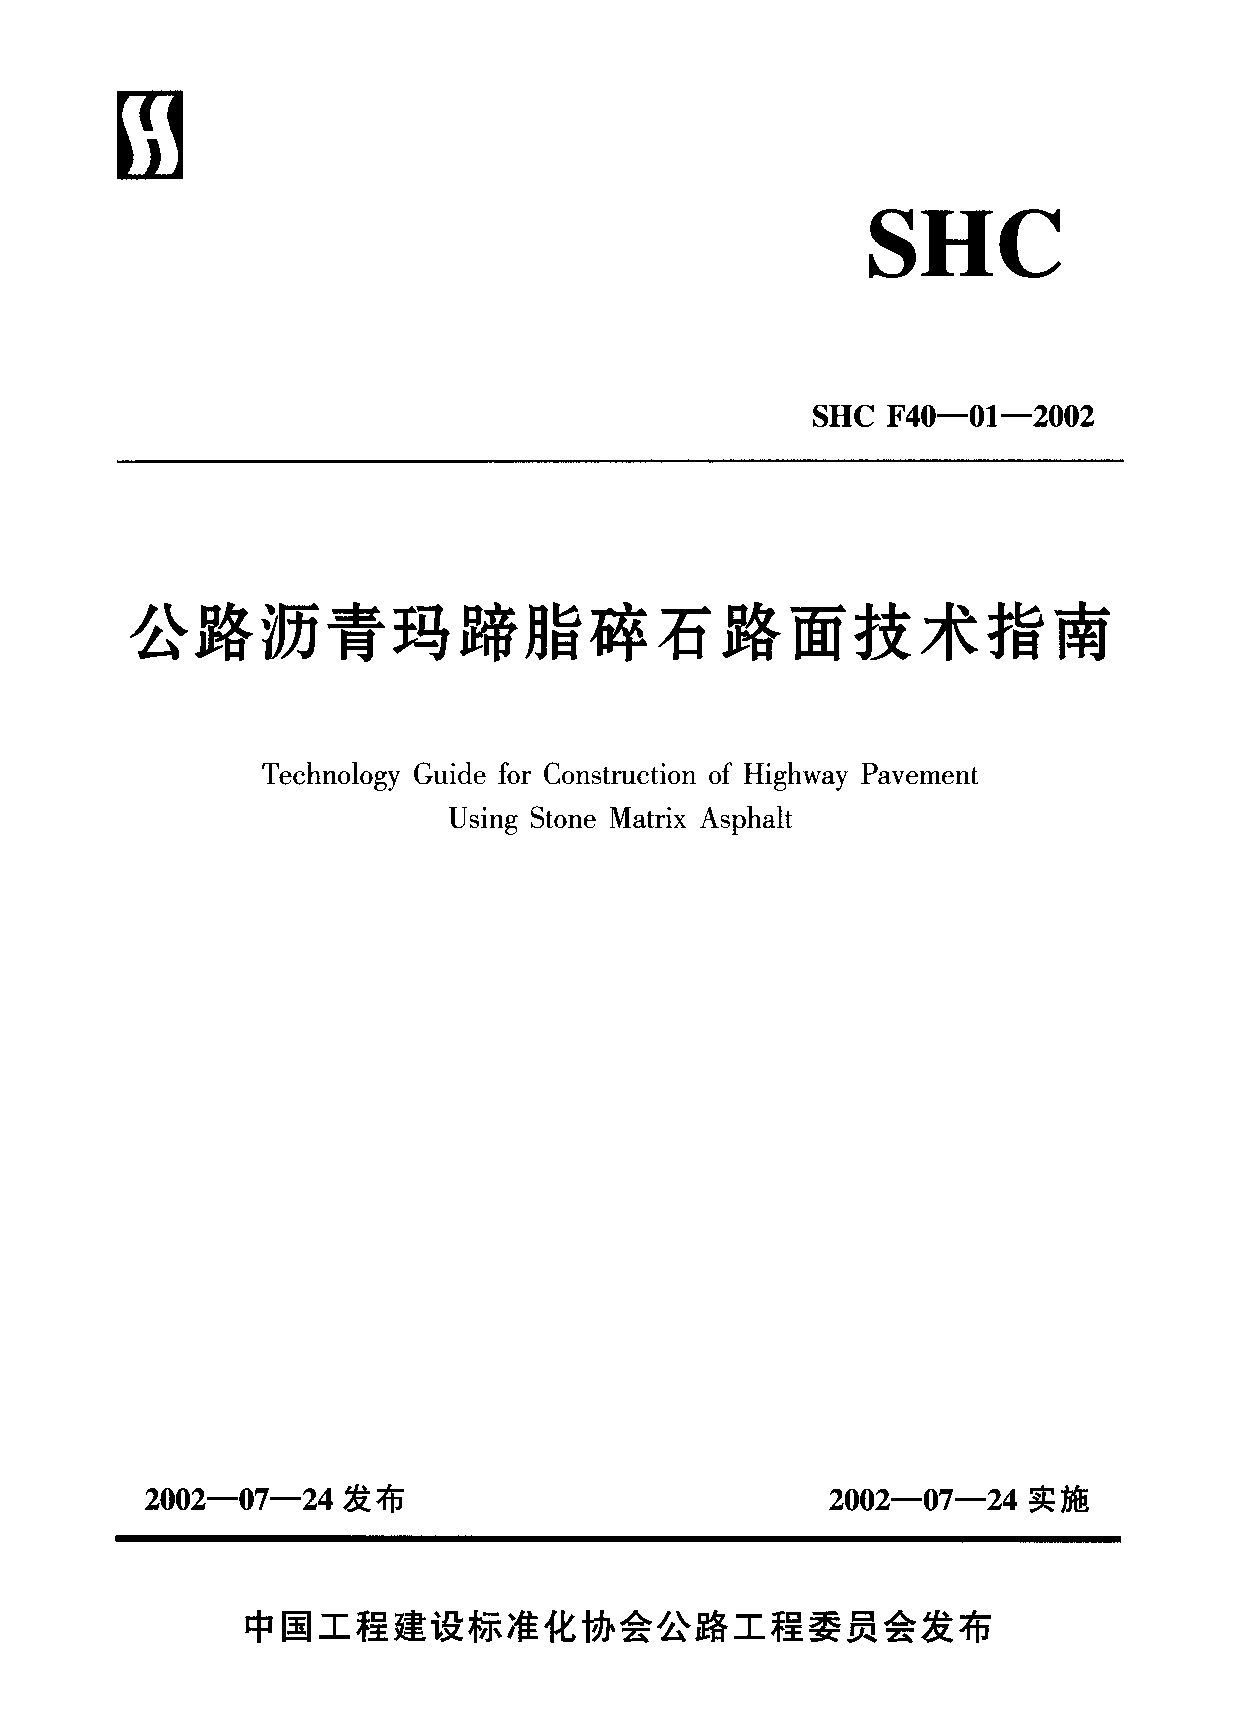 SHC F40-01-2002封面图